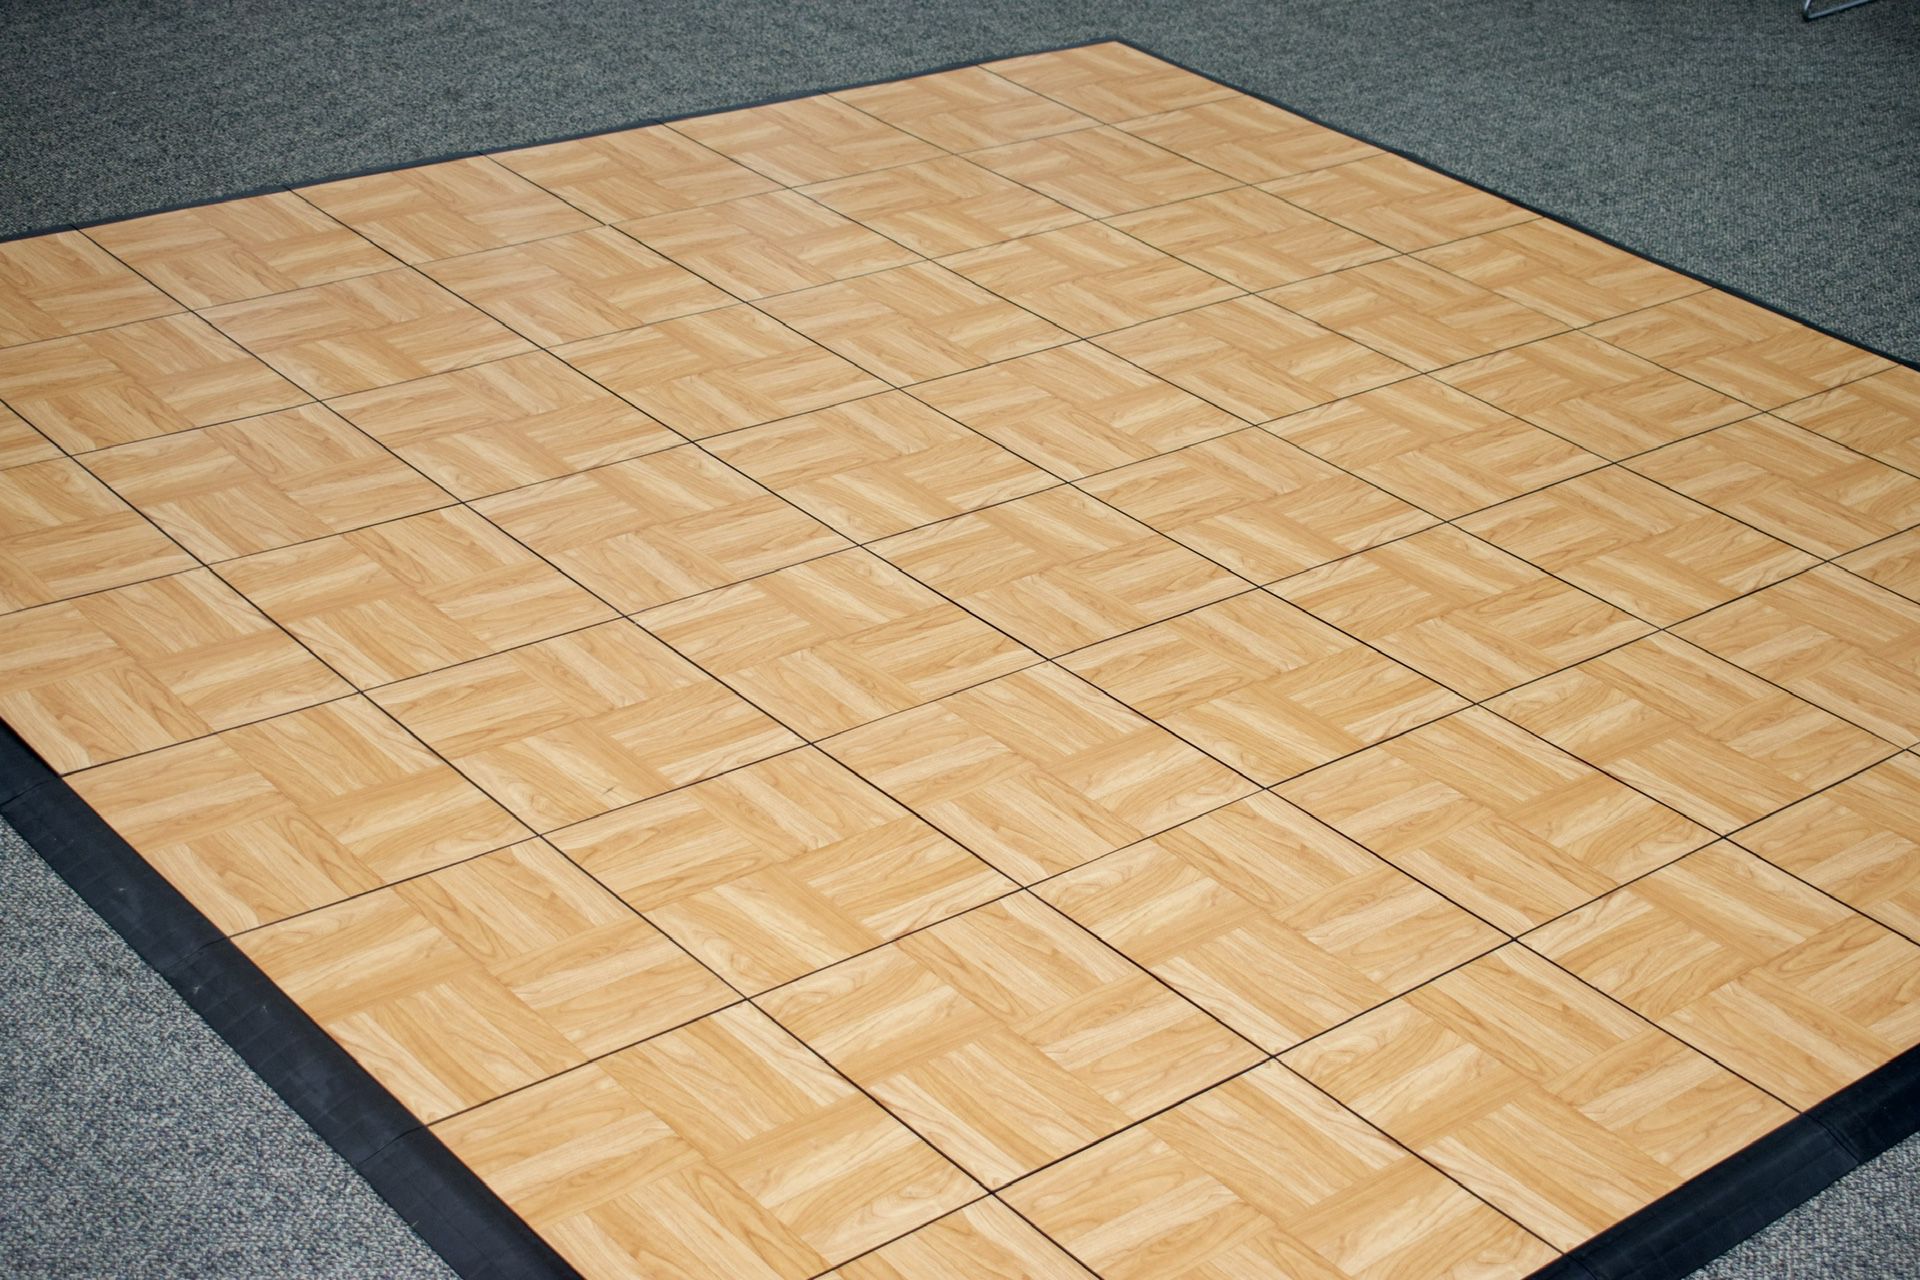 10ftX 10ft Oakwood Dance Floor Tiles With Female & Male Border Ramp & Tile Corner